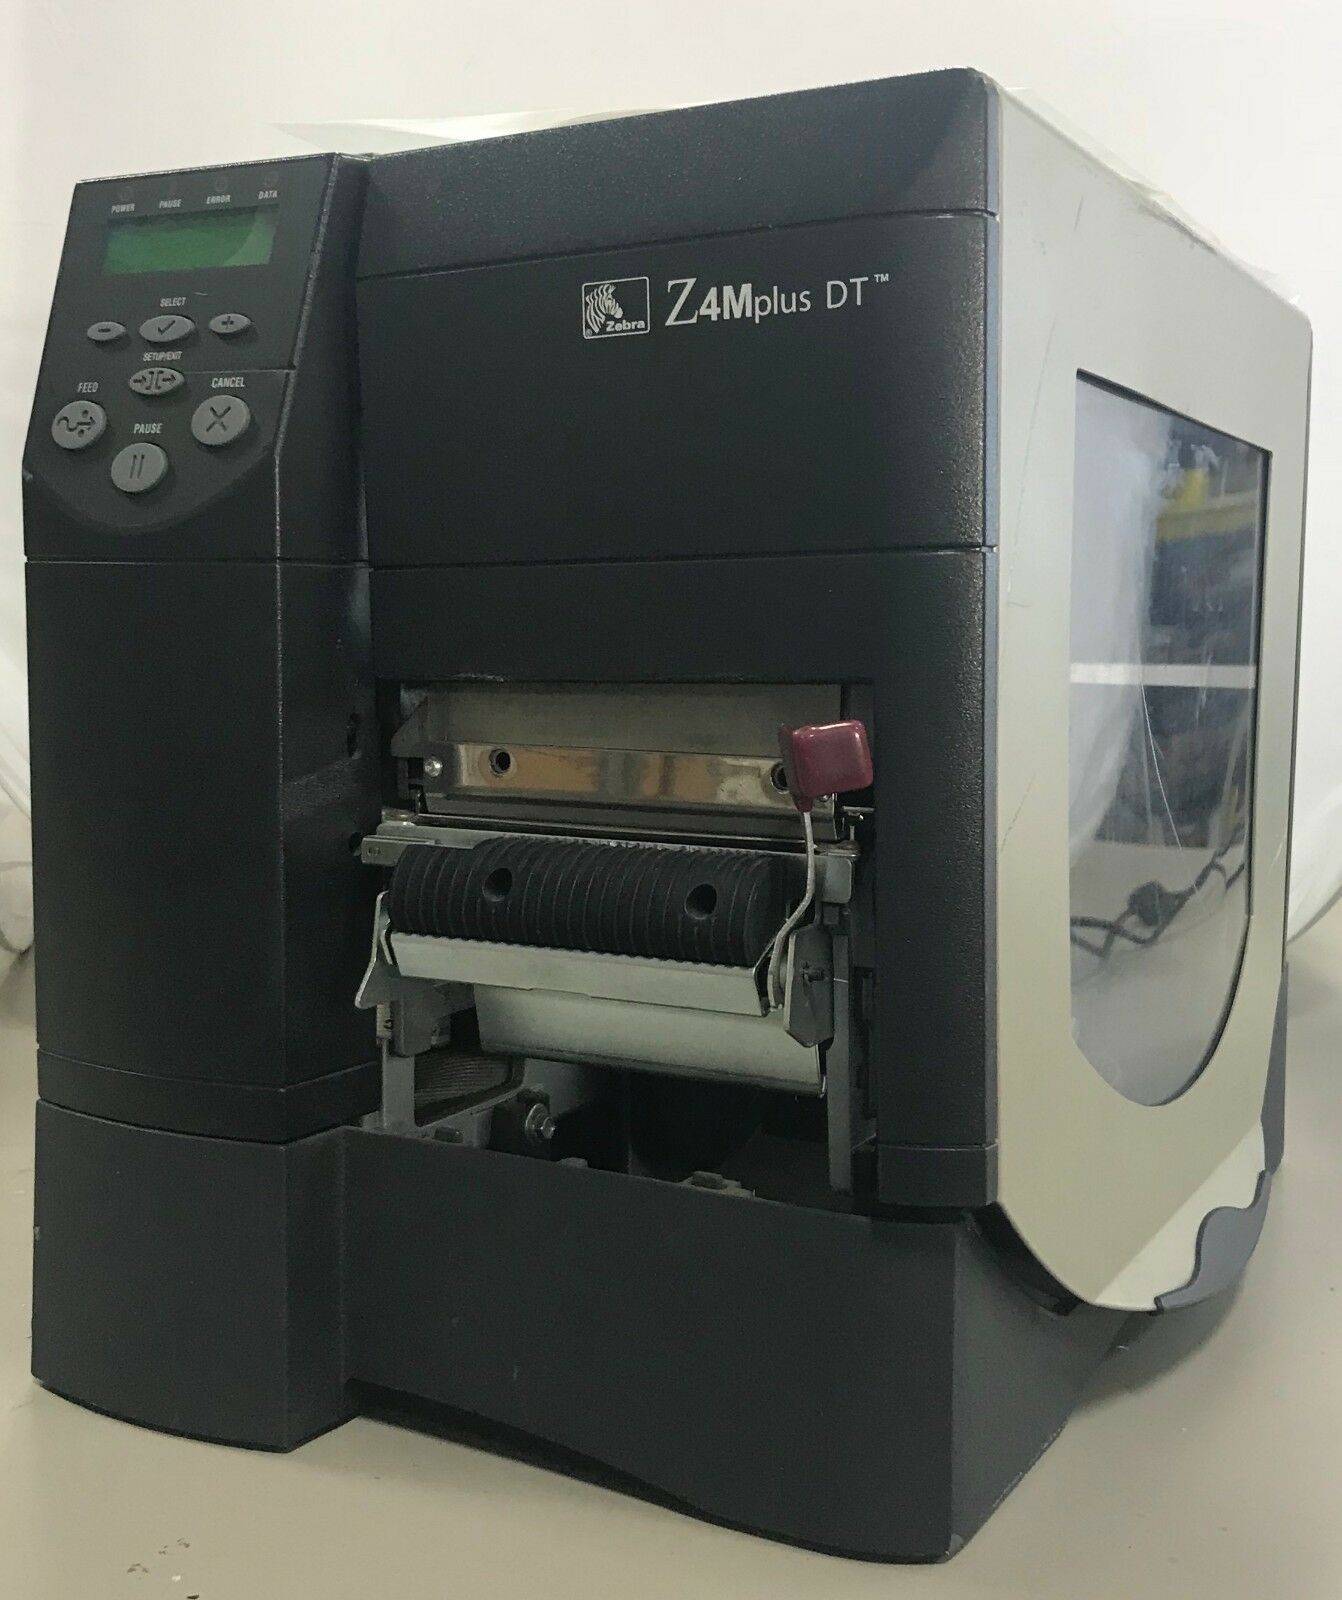 Zebra Z4mplus Dt Z4m2z 2001 4000 Direct Thermal Barcode Label Printer Usb Peeler Printers 0871